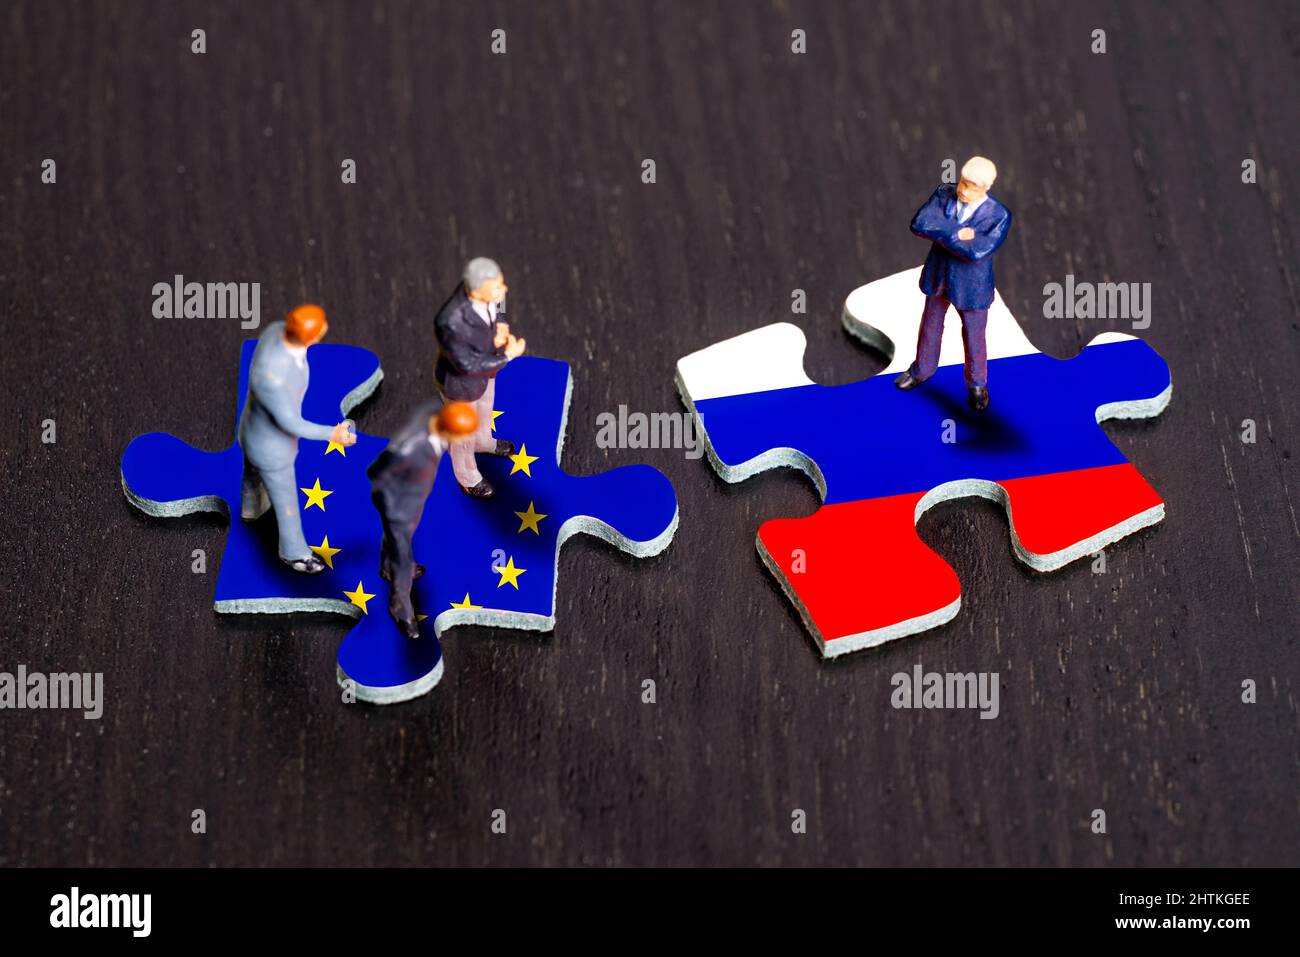 Puzzleteile mit den Flaggen Europas und Russlands Stockfoto